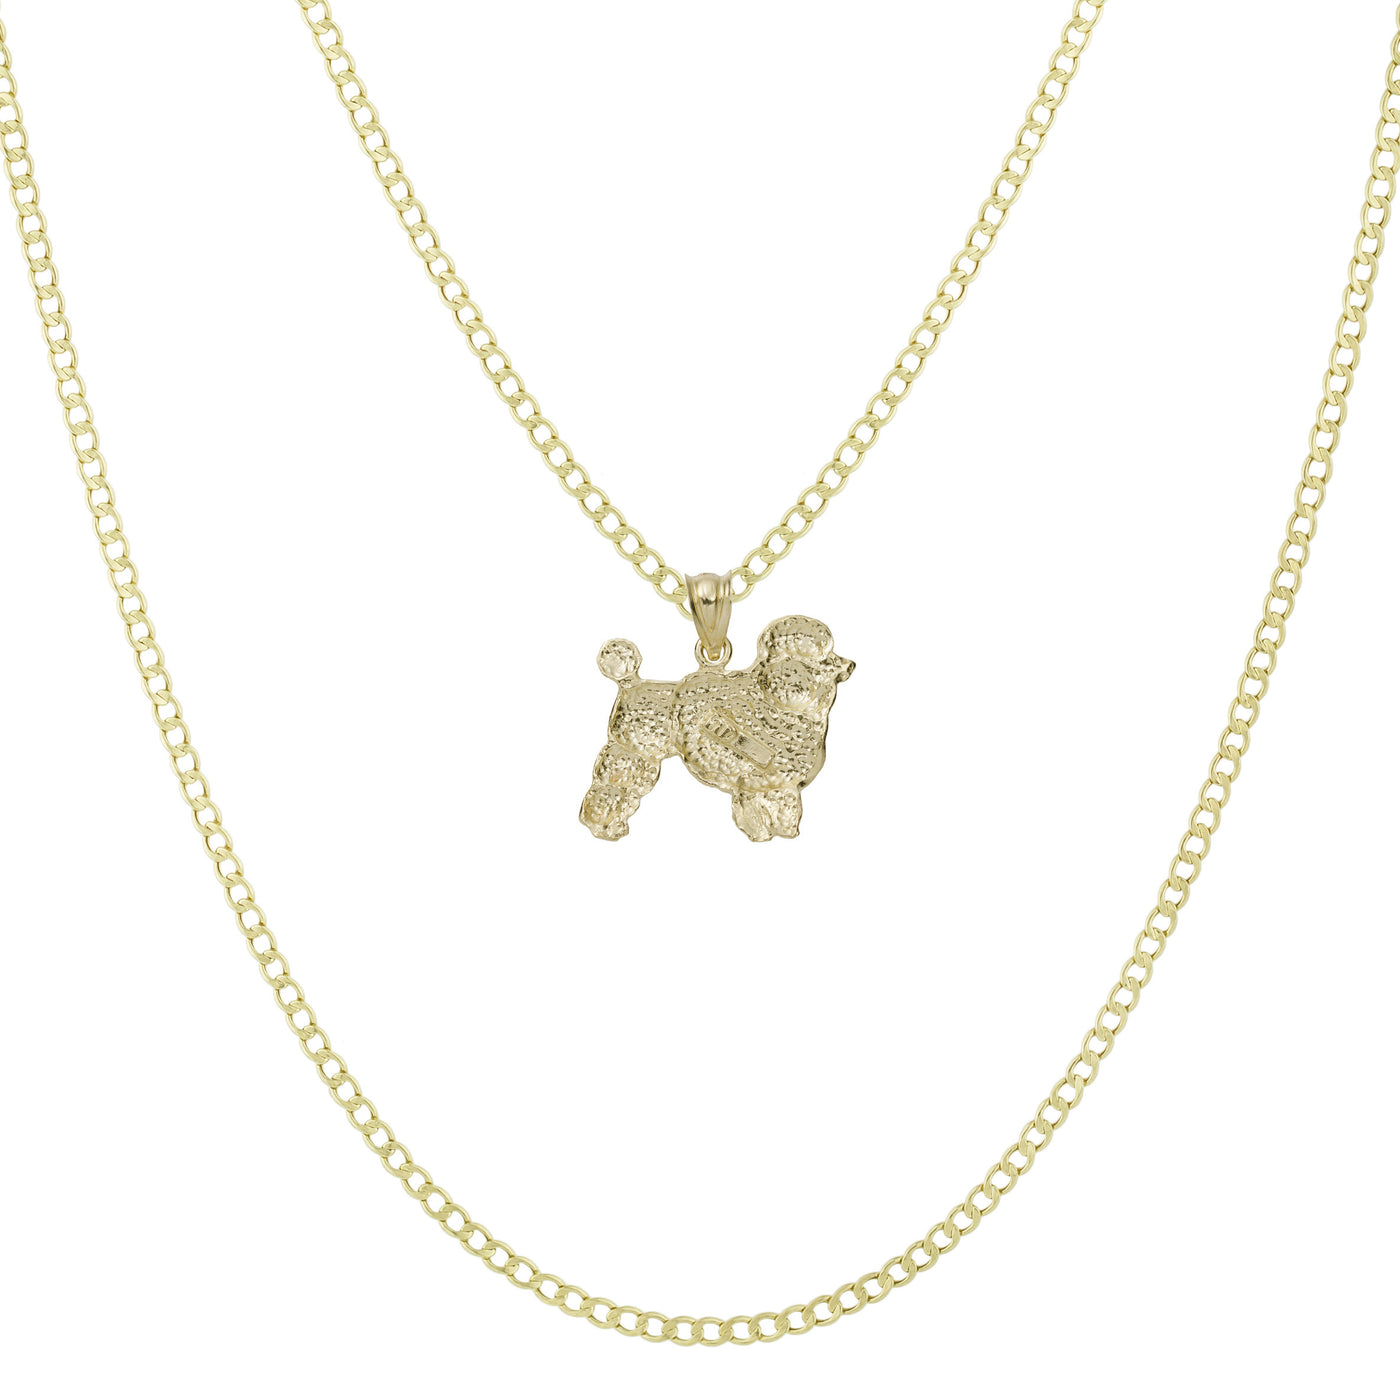 7/8" Diamond Cut Poodle Pendant & Chain Necklace Set 10K Yellow Gold